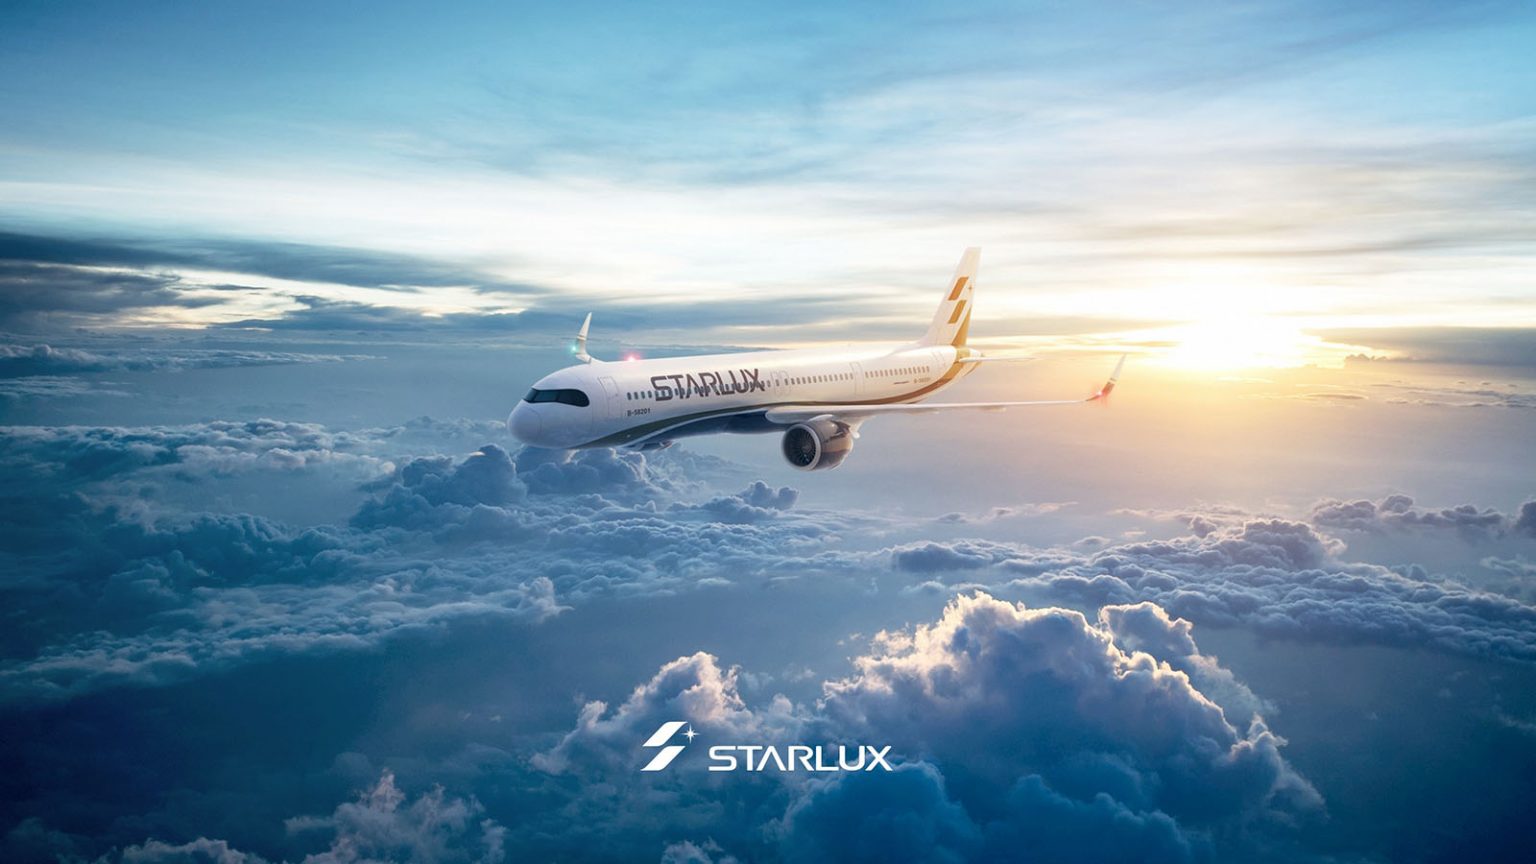 Văn phòng STARLUX tại Đà Nẵng bắt đầu bán vé máy bay từ ngày 22/01/2020